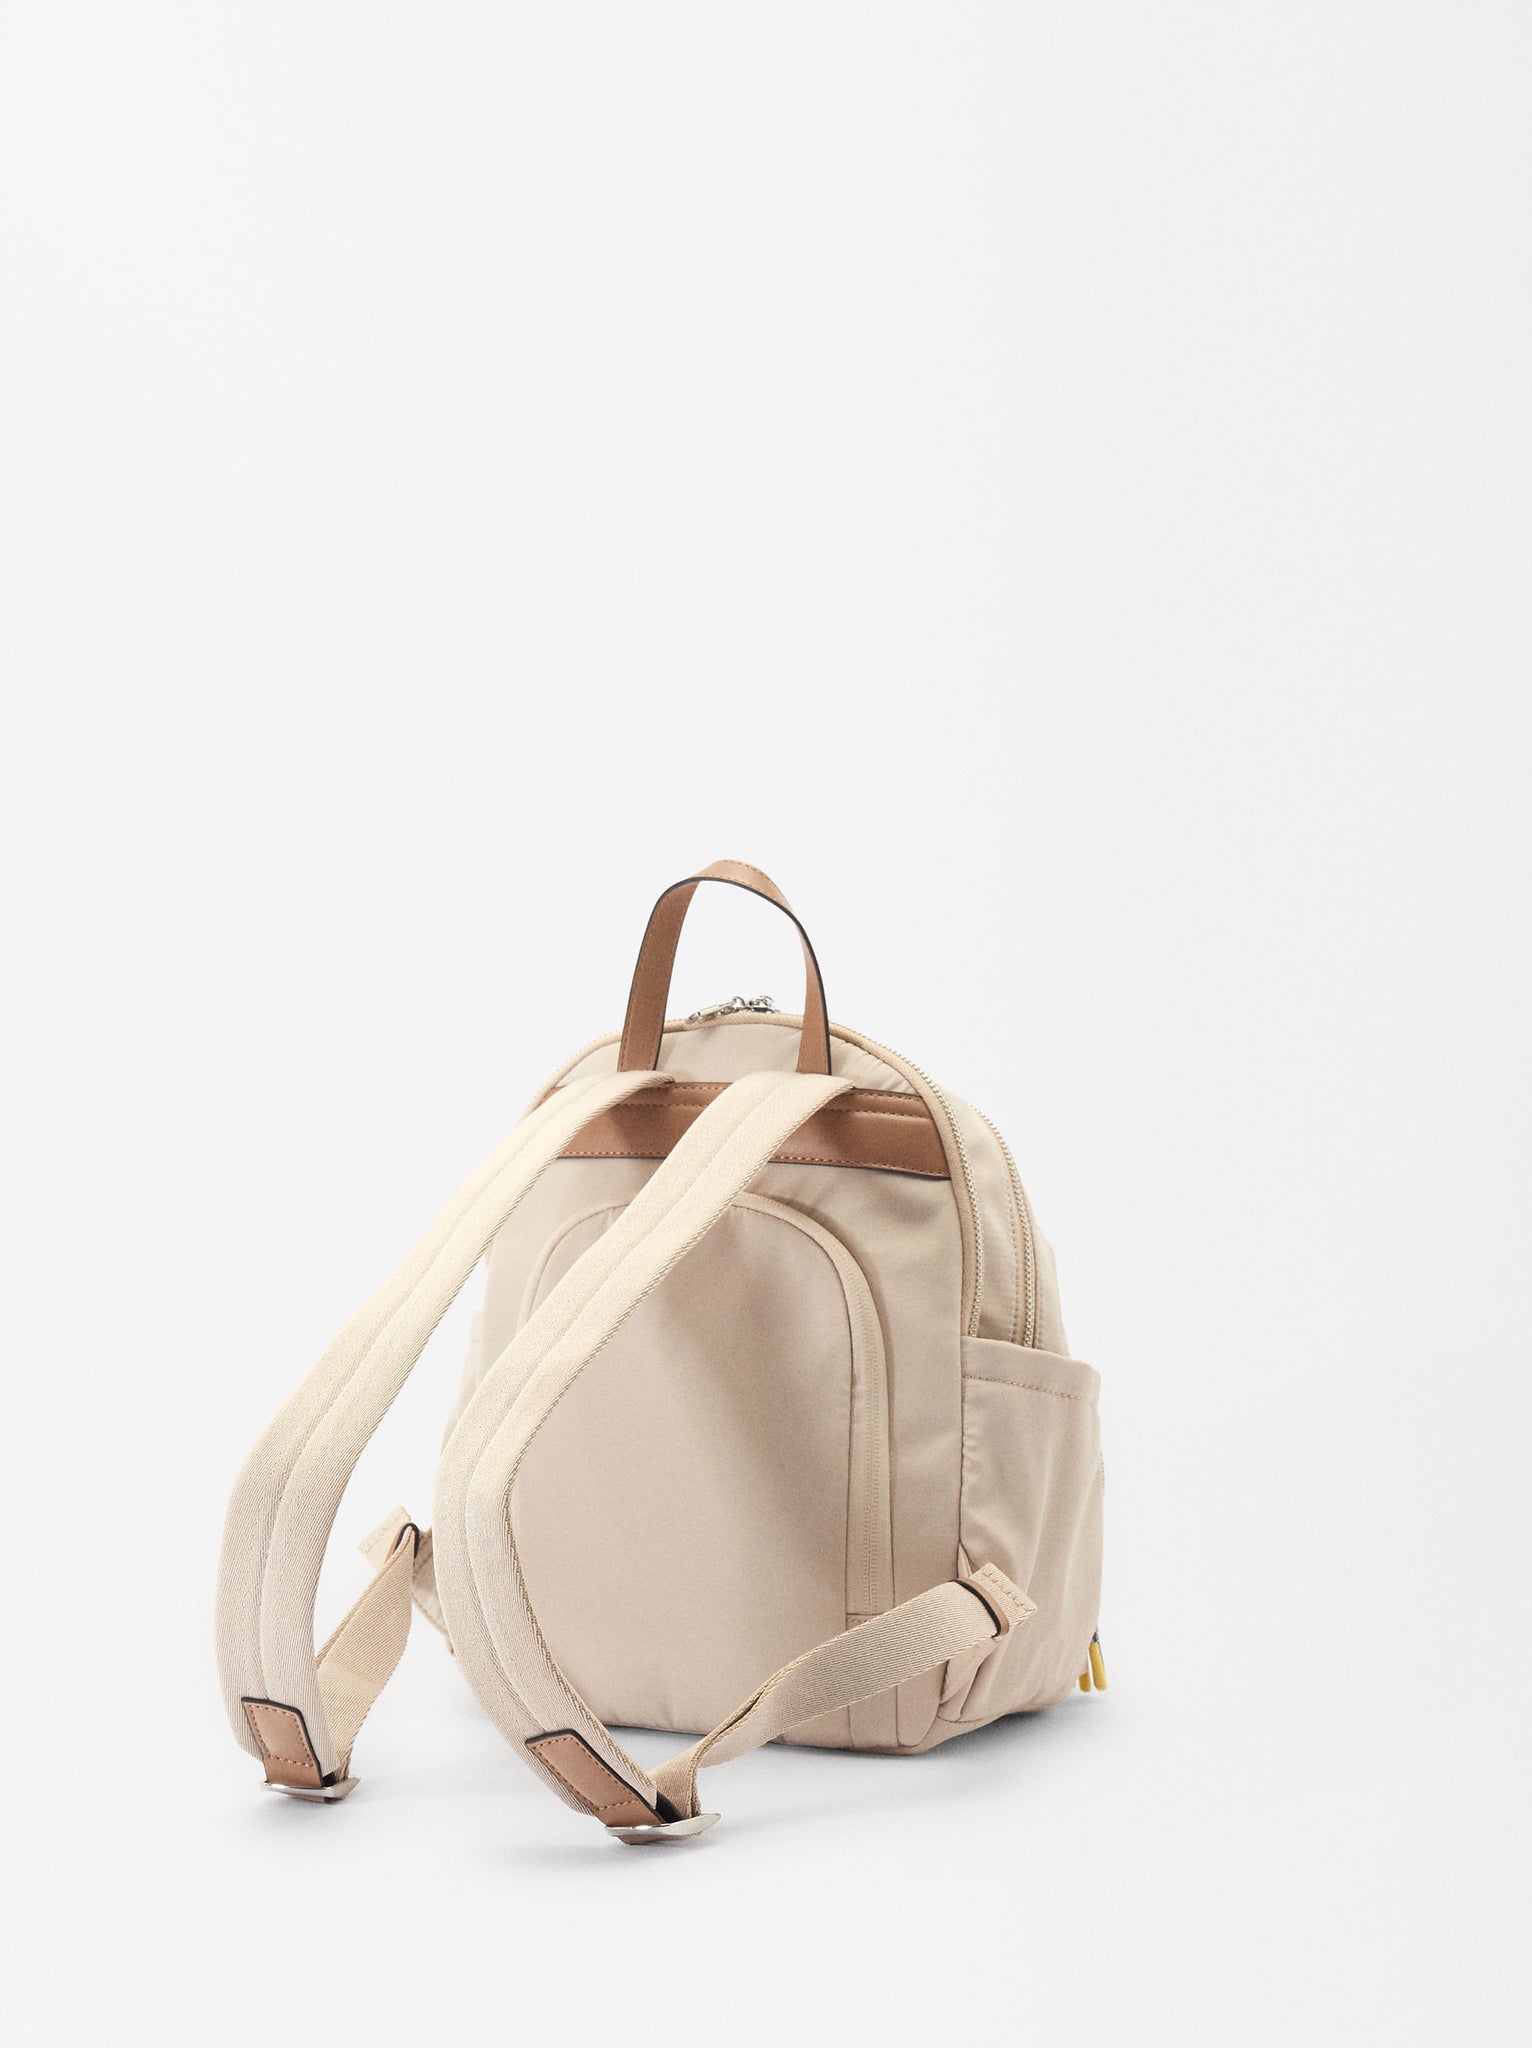 Nylon Backpack For 13” Laptop